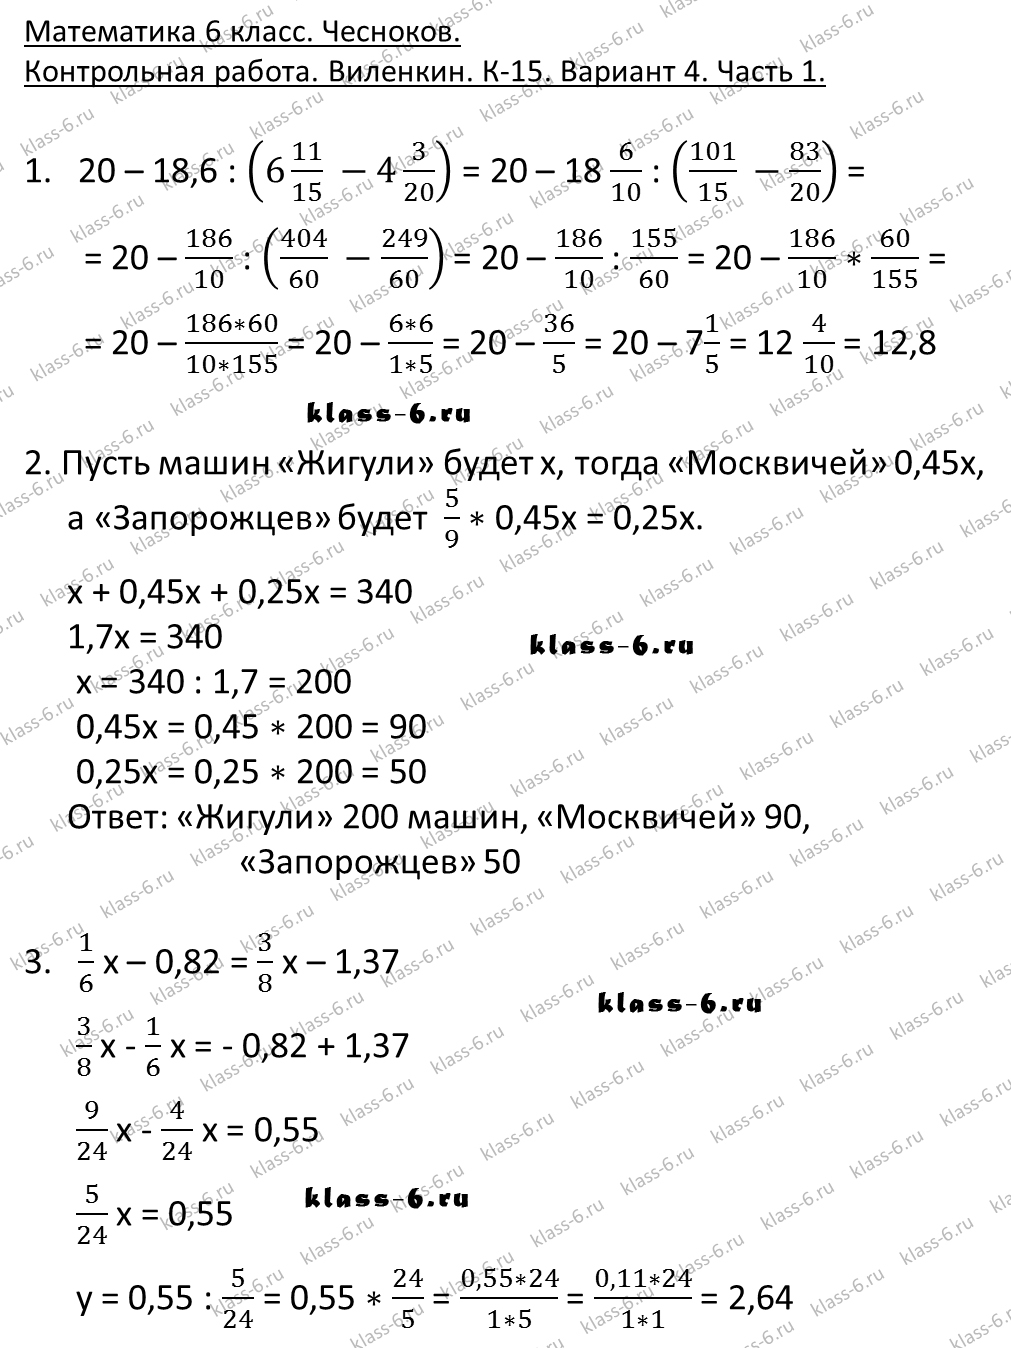 Условие задачи в дидпктических материалах 6 класс виленкин страница 129 1 вариант